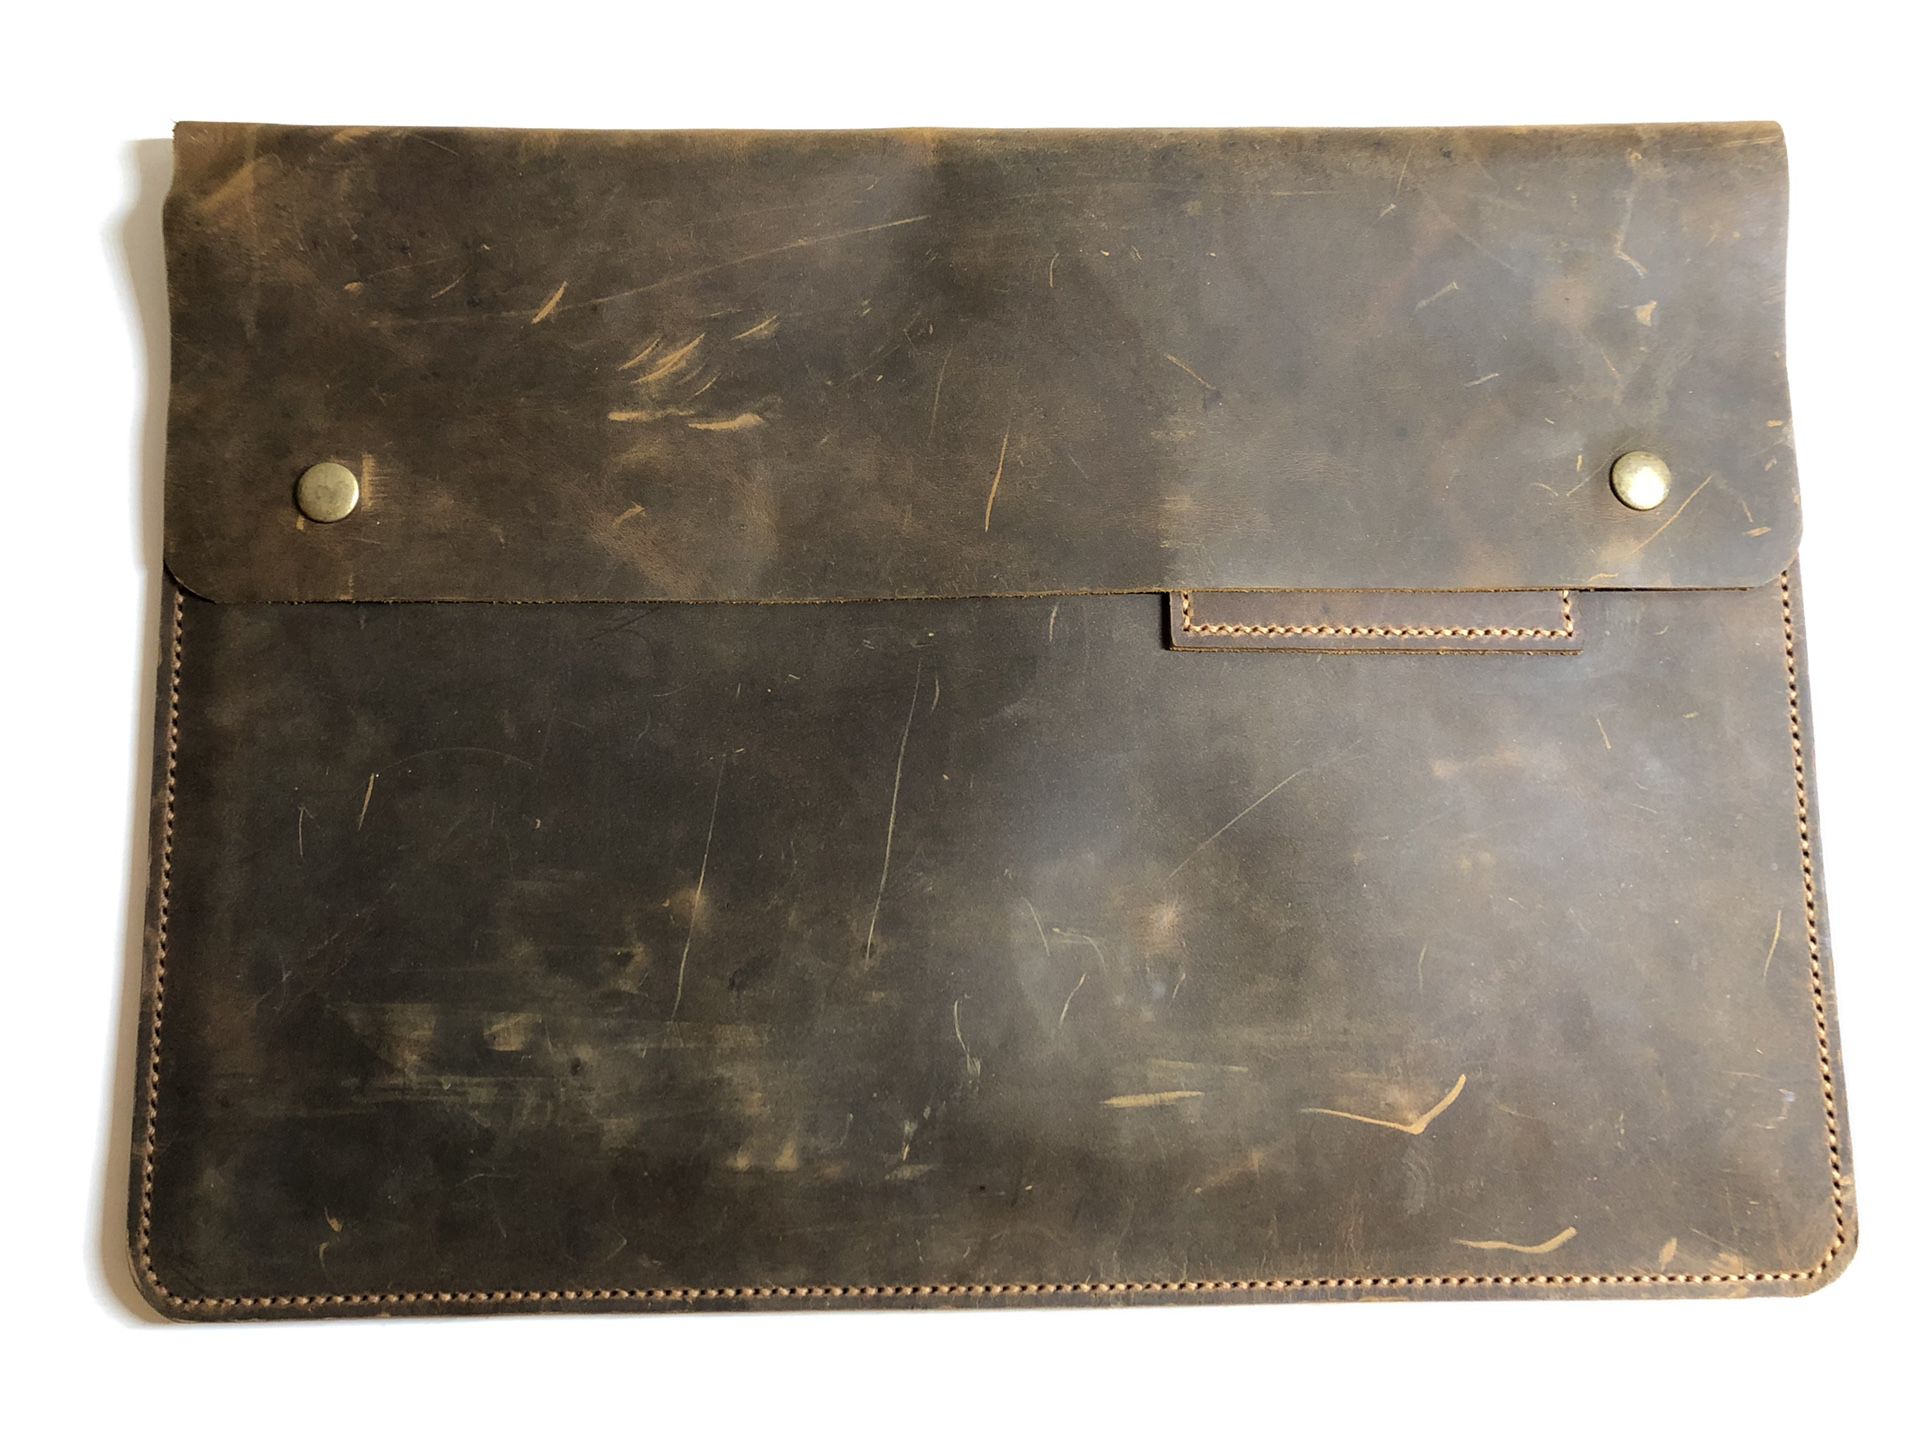 Beautiful Leather laptop case